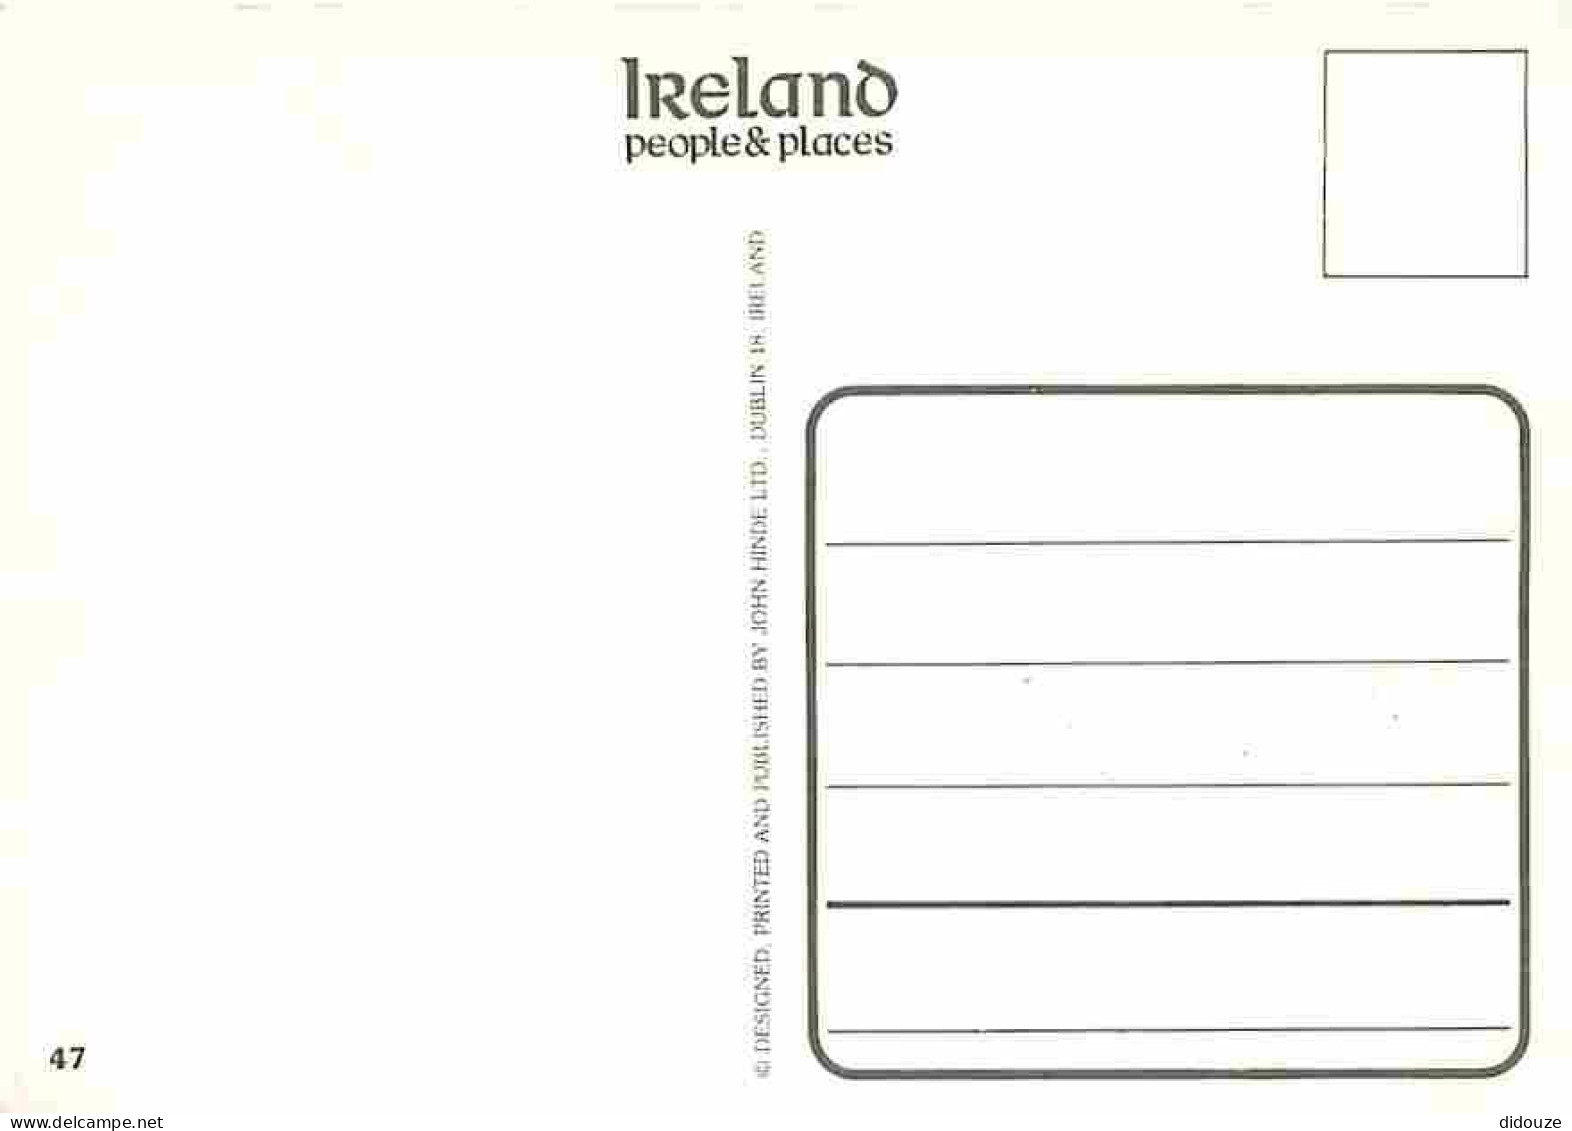 Irlande - Express Delivery - Anes - Pots De Lait - Charrette - CPM - Voir Scans Recto-Verso - Other